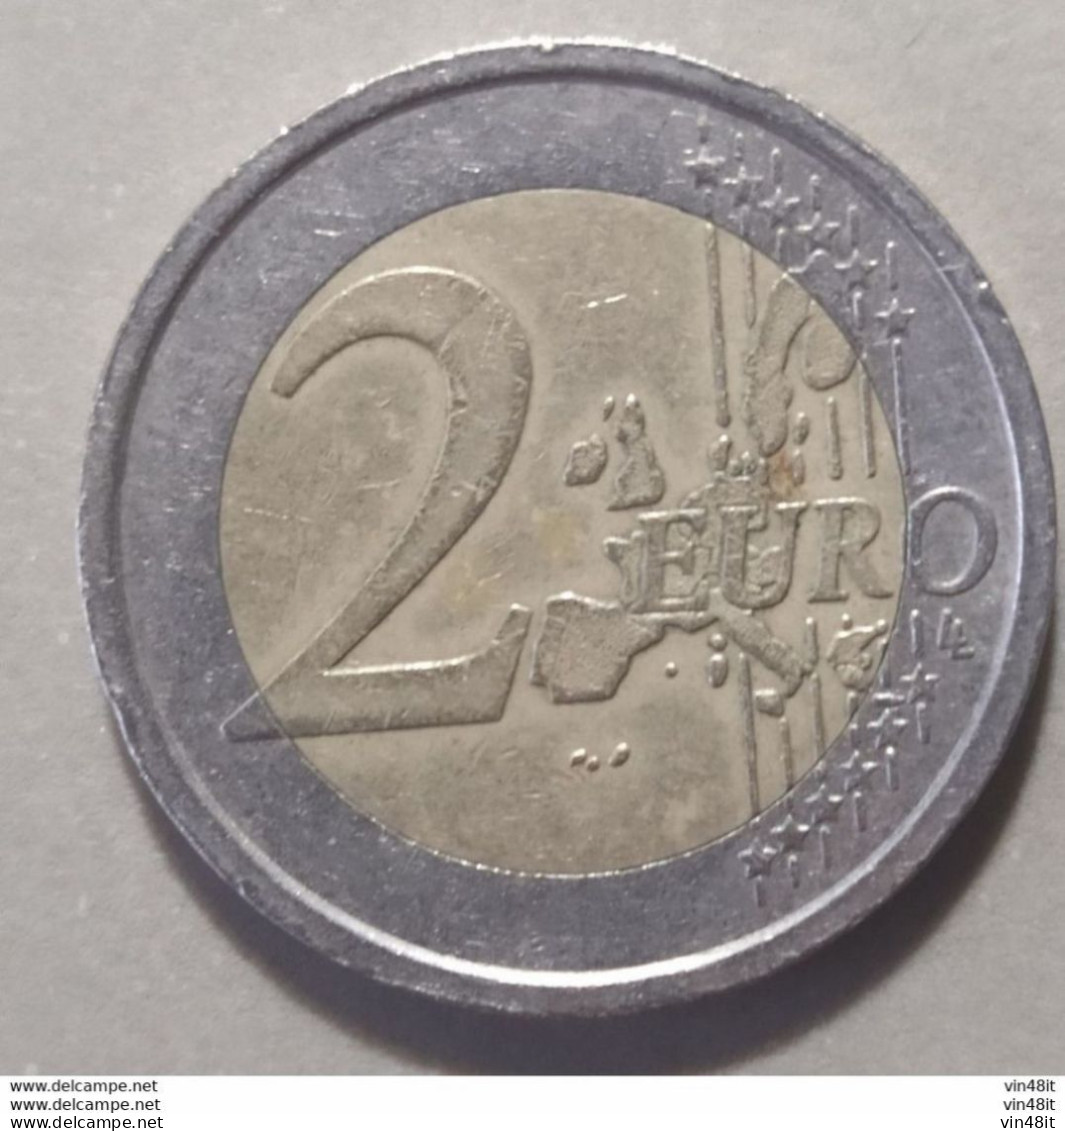 2014 -  SLOVENIA - MONETA IN EURO -  (COMMEMORATIVA)  DEL VALORE DI 2,00  EURO -  USATA- - Slovenia